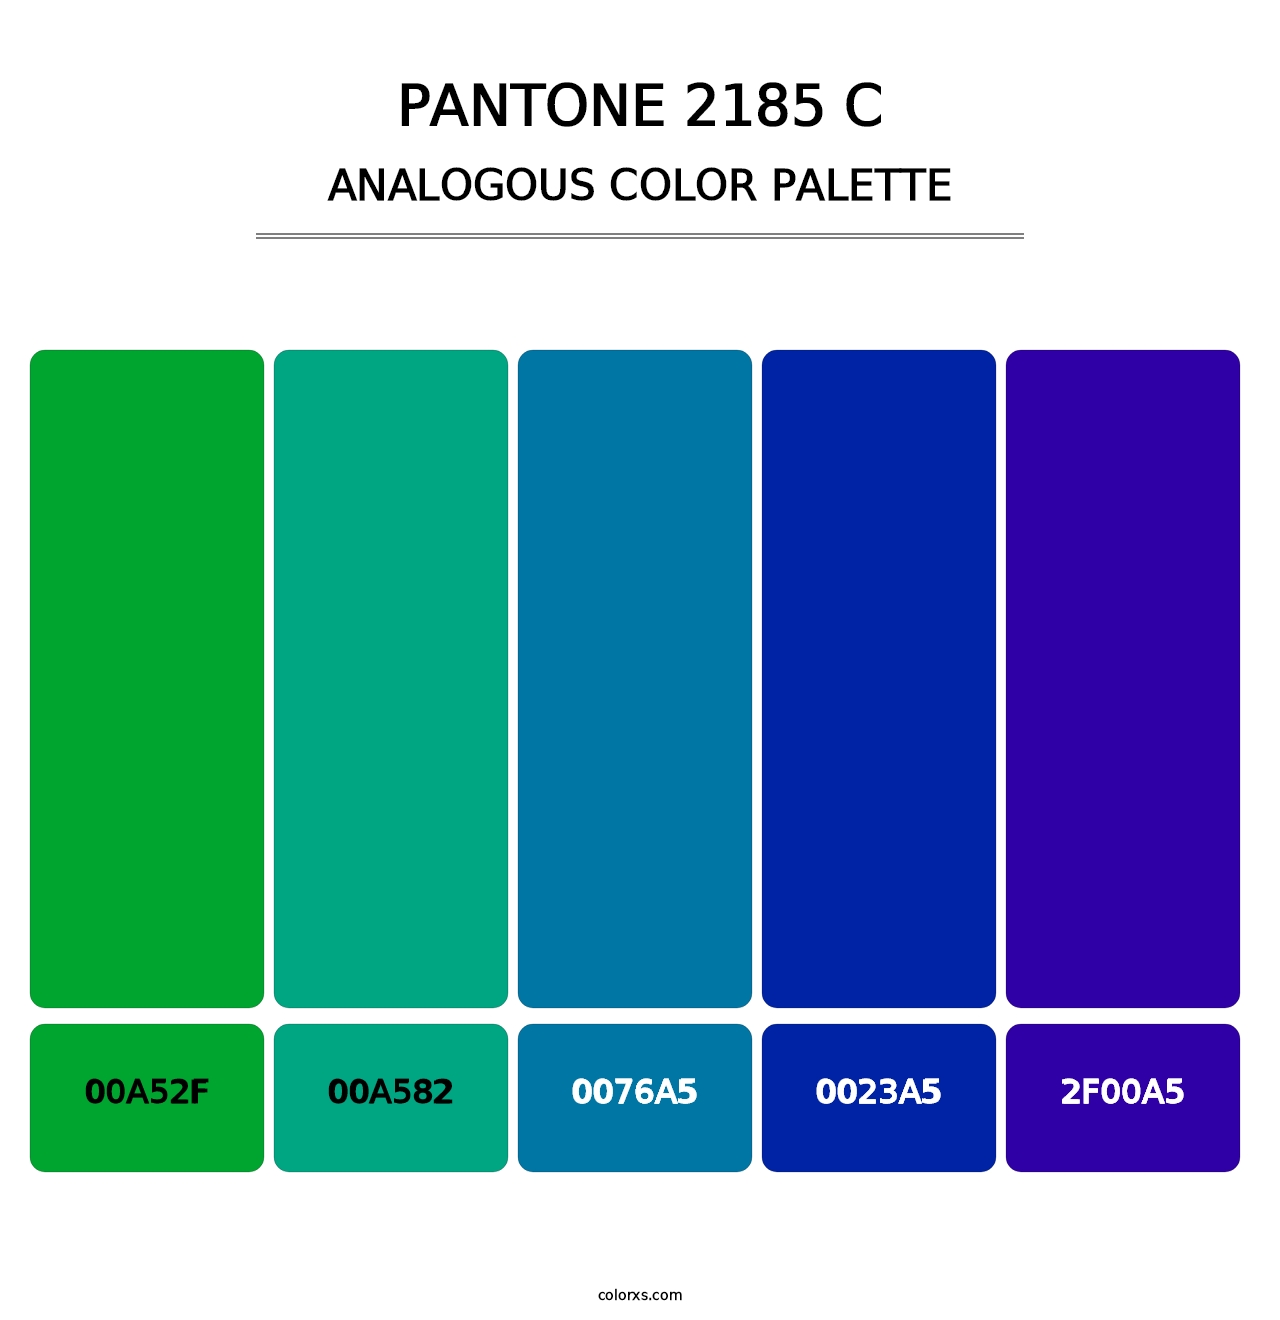 PANTONE 2185 C - Analogous Color Palette